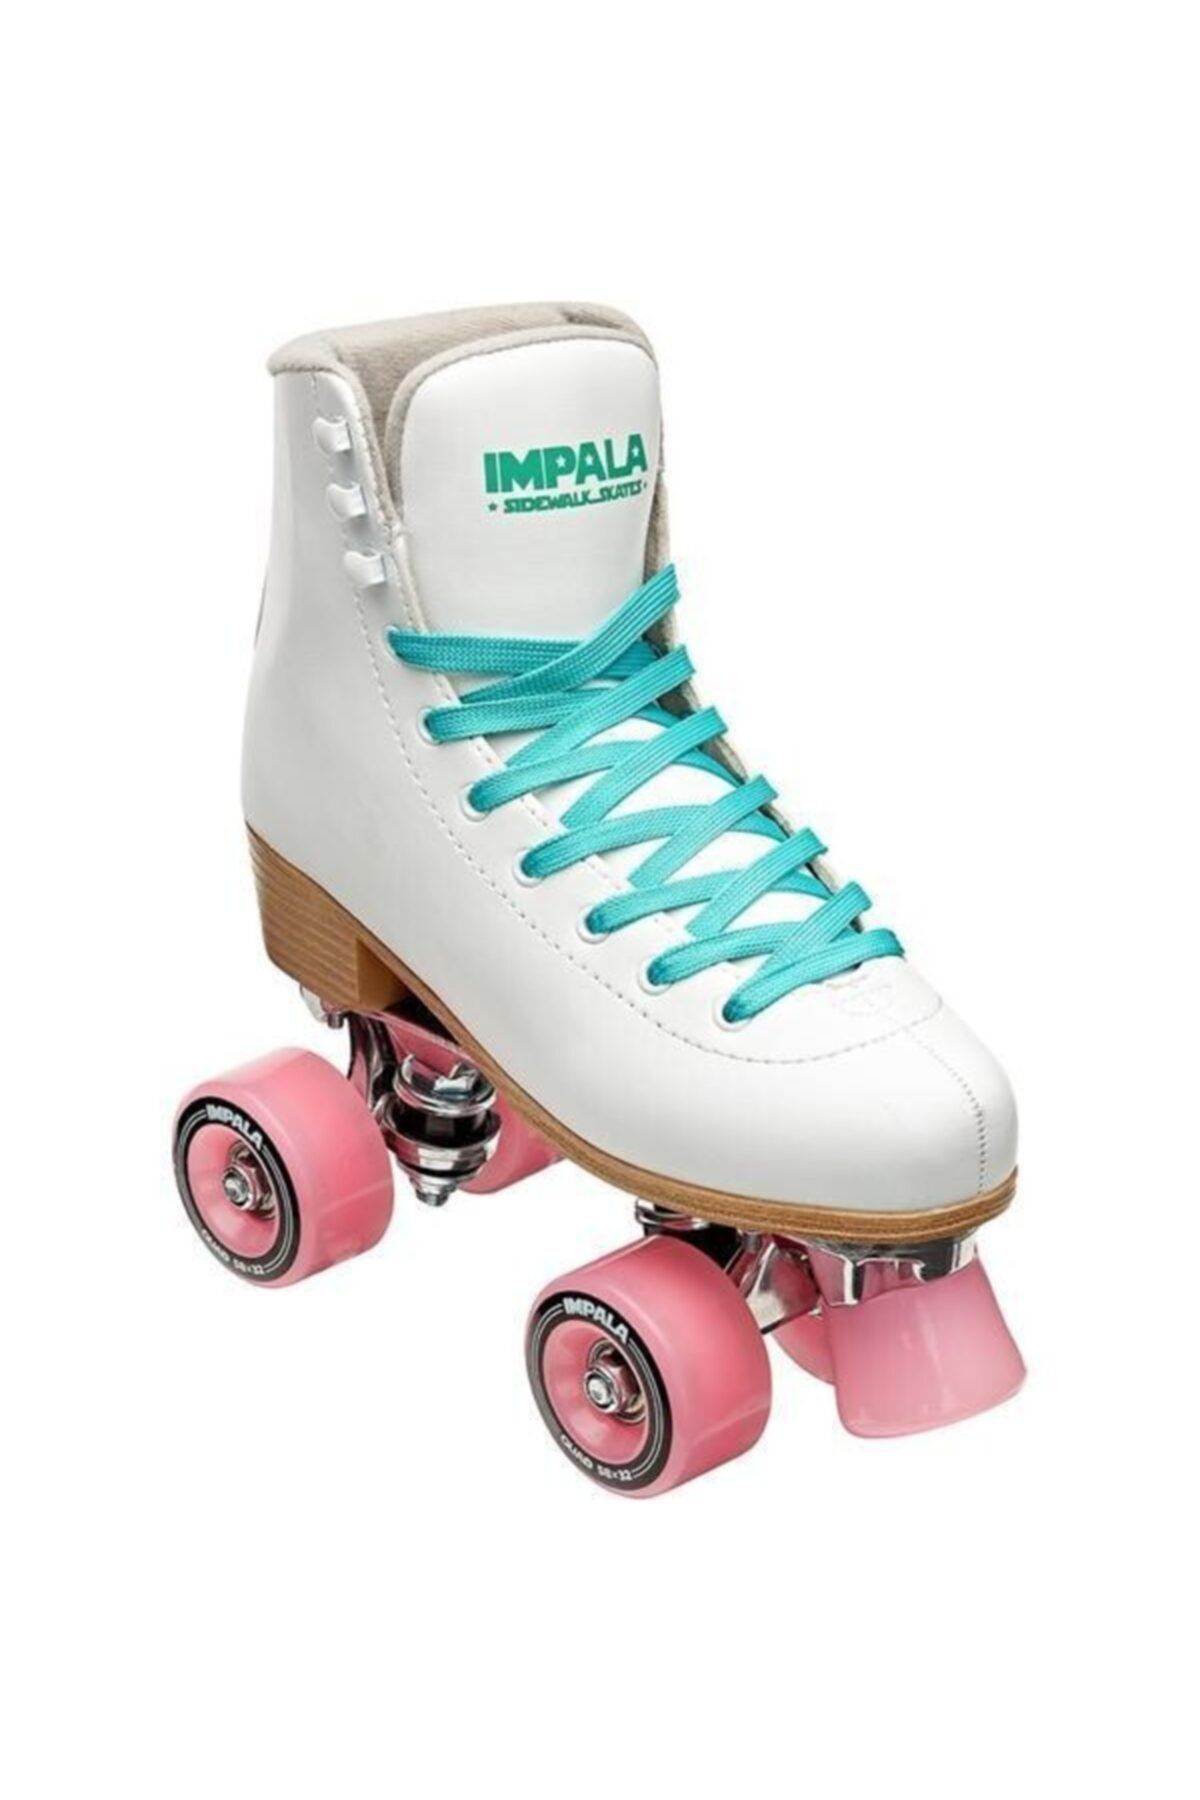 Impala Rollerskates Quad Skate Patenn